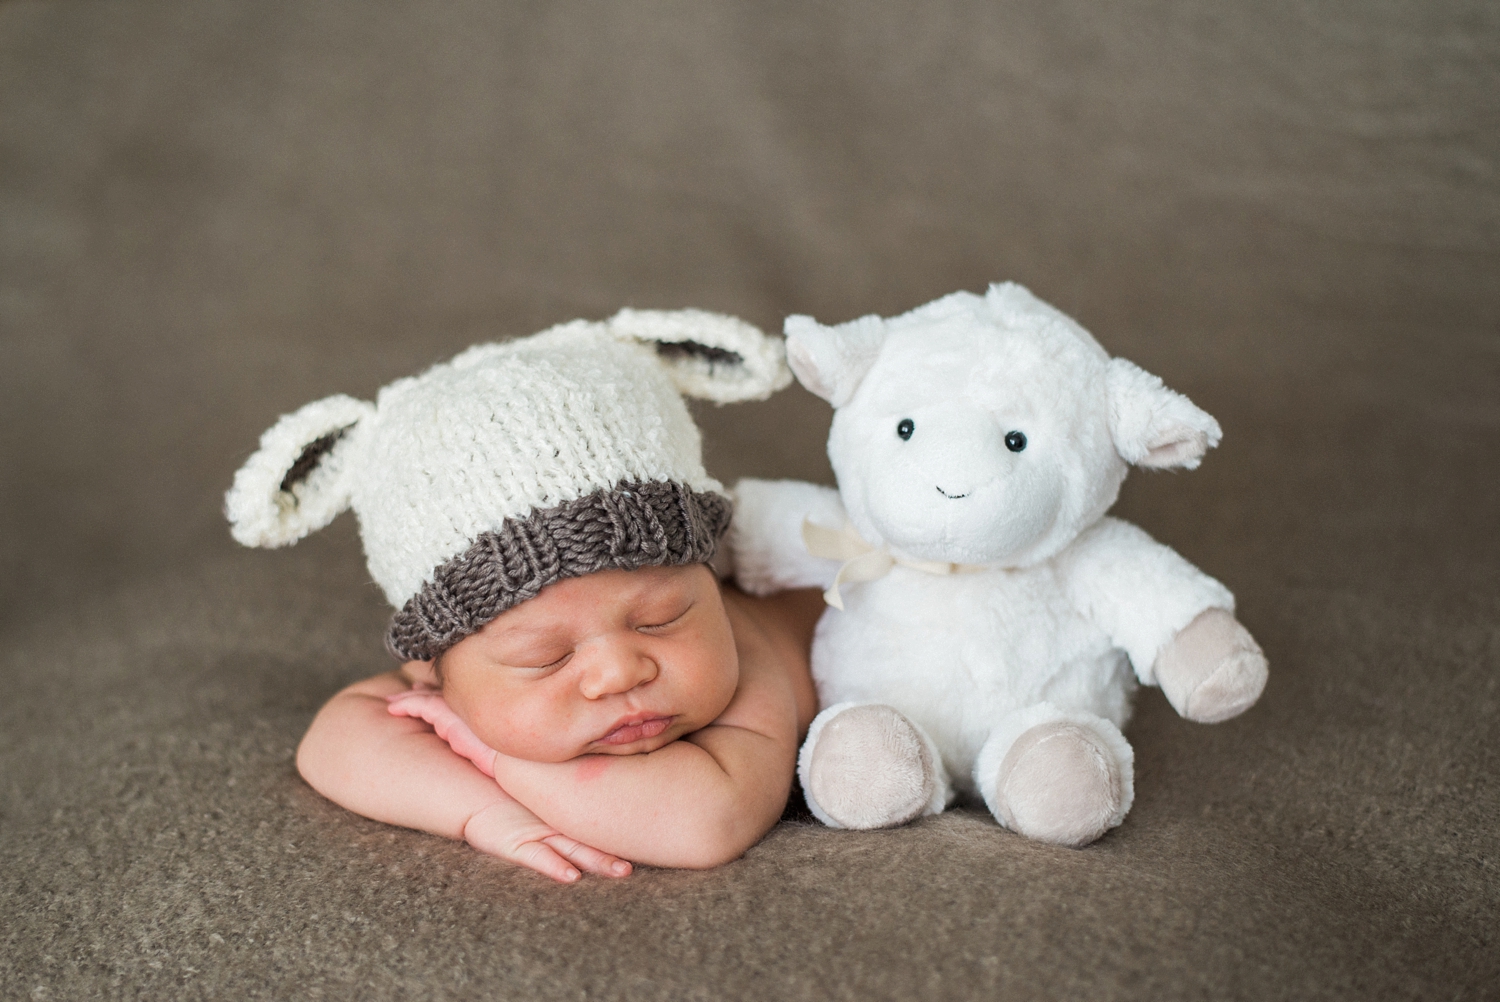 knit hat — Brooklyn New York Family & Newborn Photography Blog — Brooklyn,  New York Family Photography & Newborn Photographer, Shelley Marie Photo